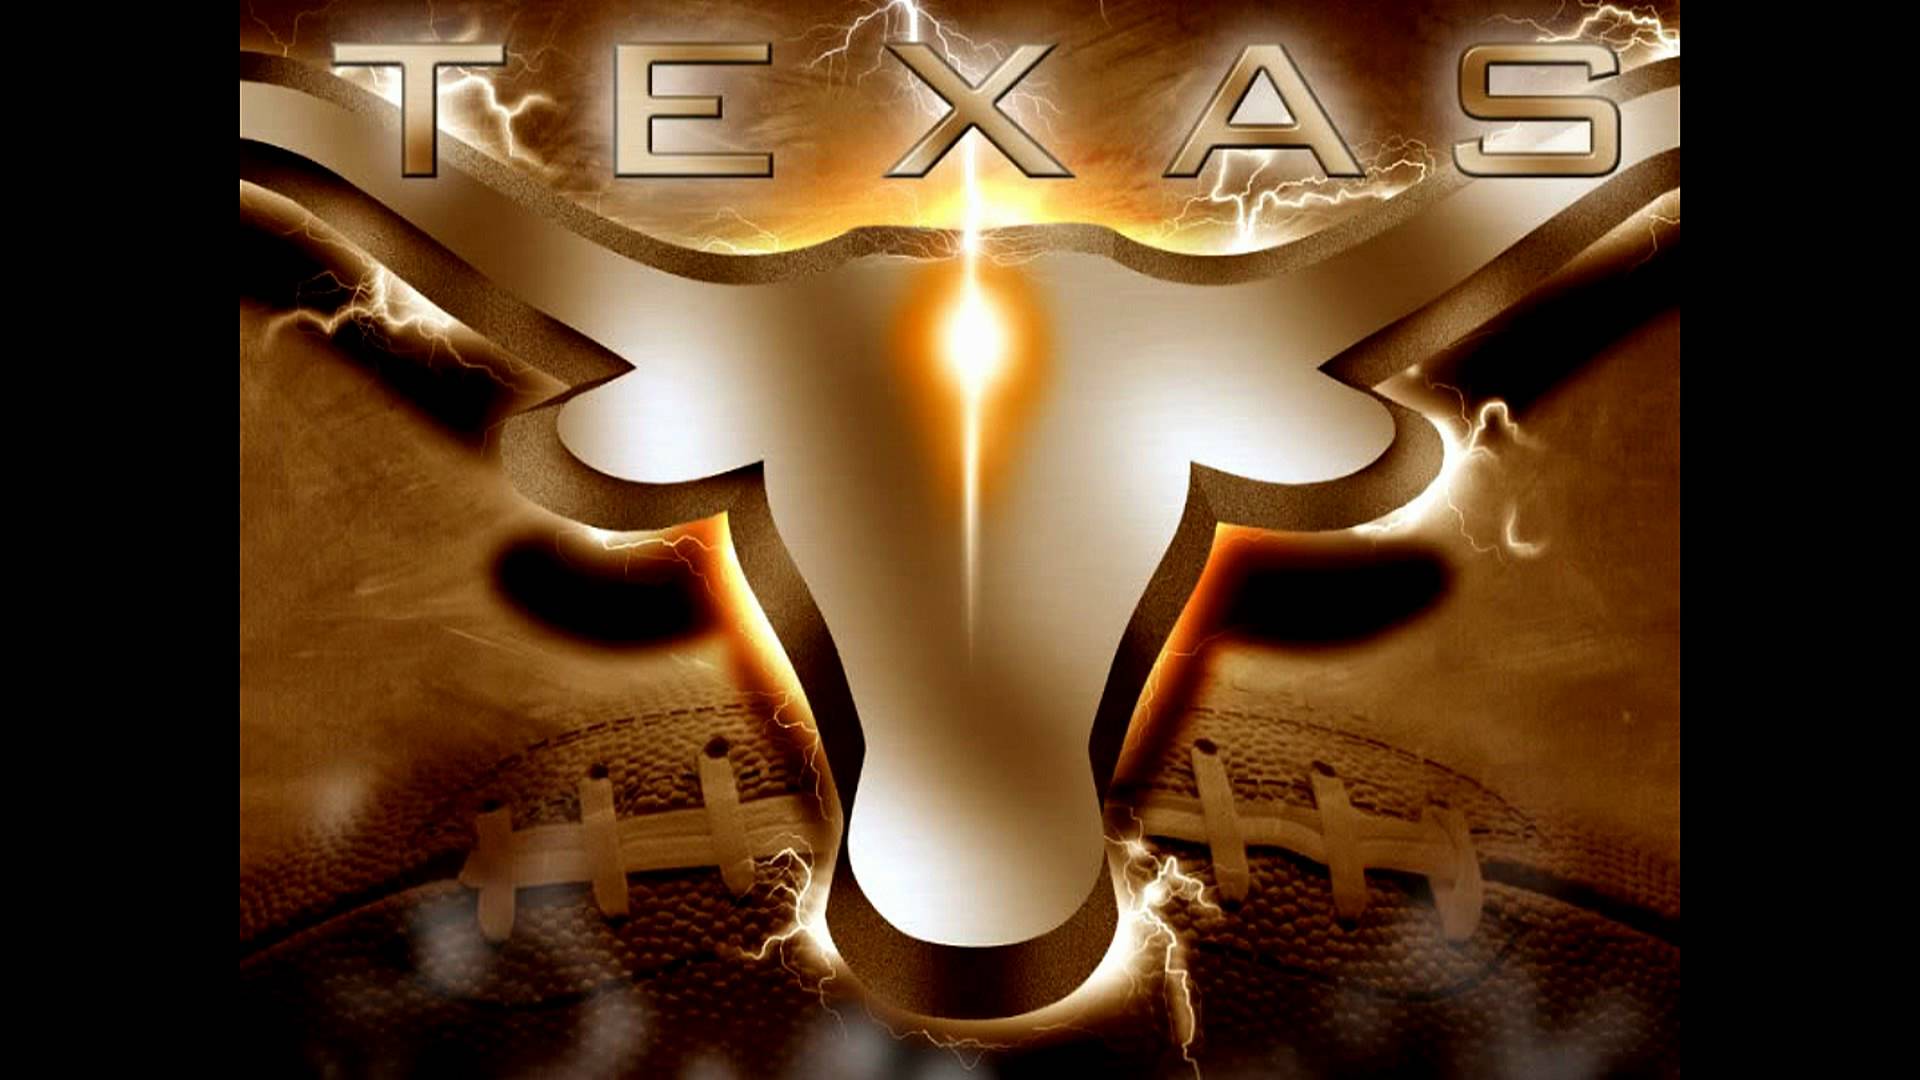 Free Texas Longhorns Wallpaper , HD Wallpaper & Backgrounds